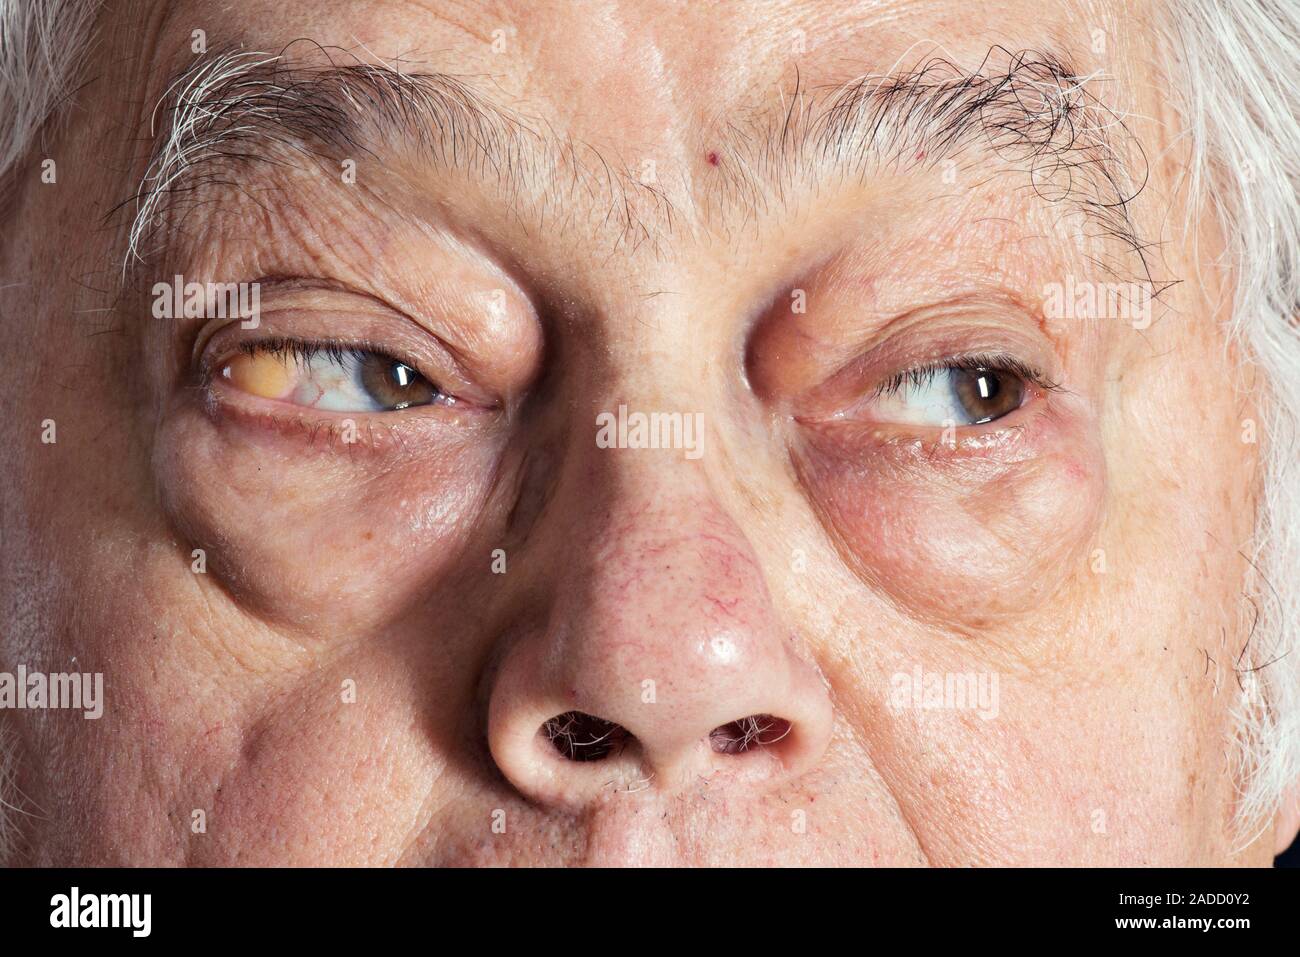 Orbital fett Prolaps. Augen von einem 72-jährigen Mann mit subconjunctival  Prolaps der orbitalen Fat (gelb) auf dem rechten Auge (links). In diesem  condit Stockfotografie - Alamy